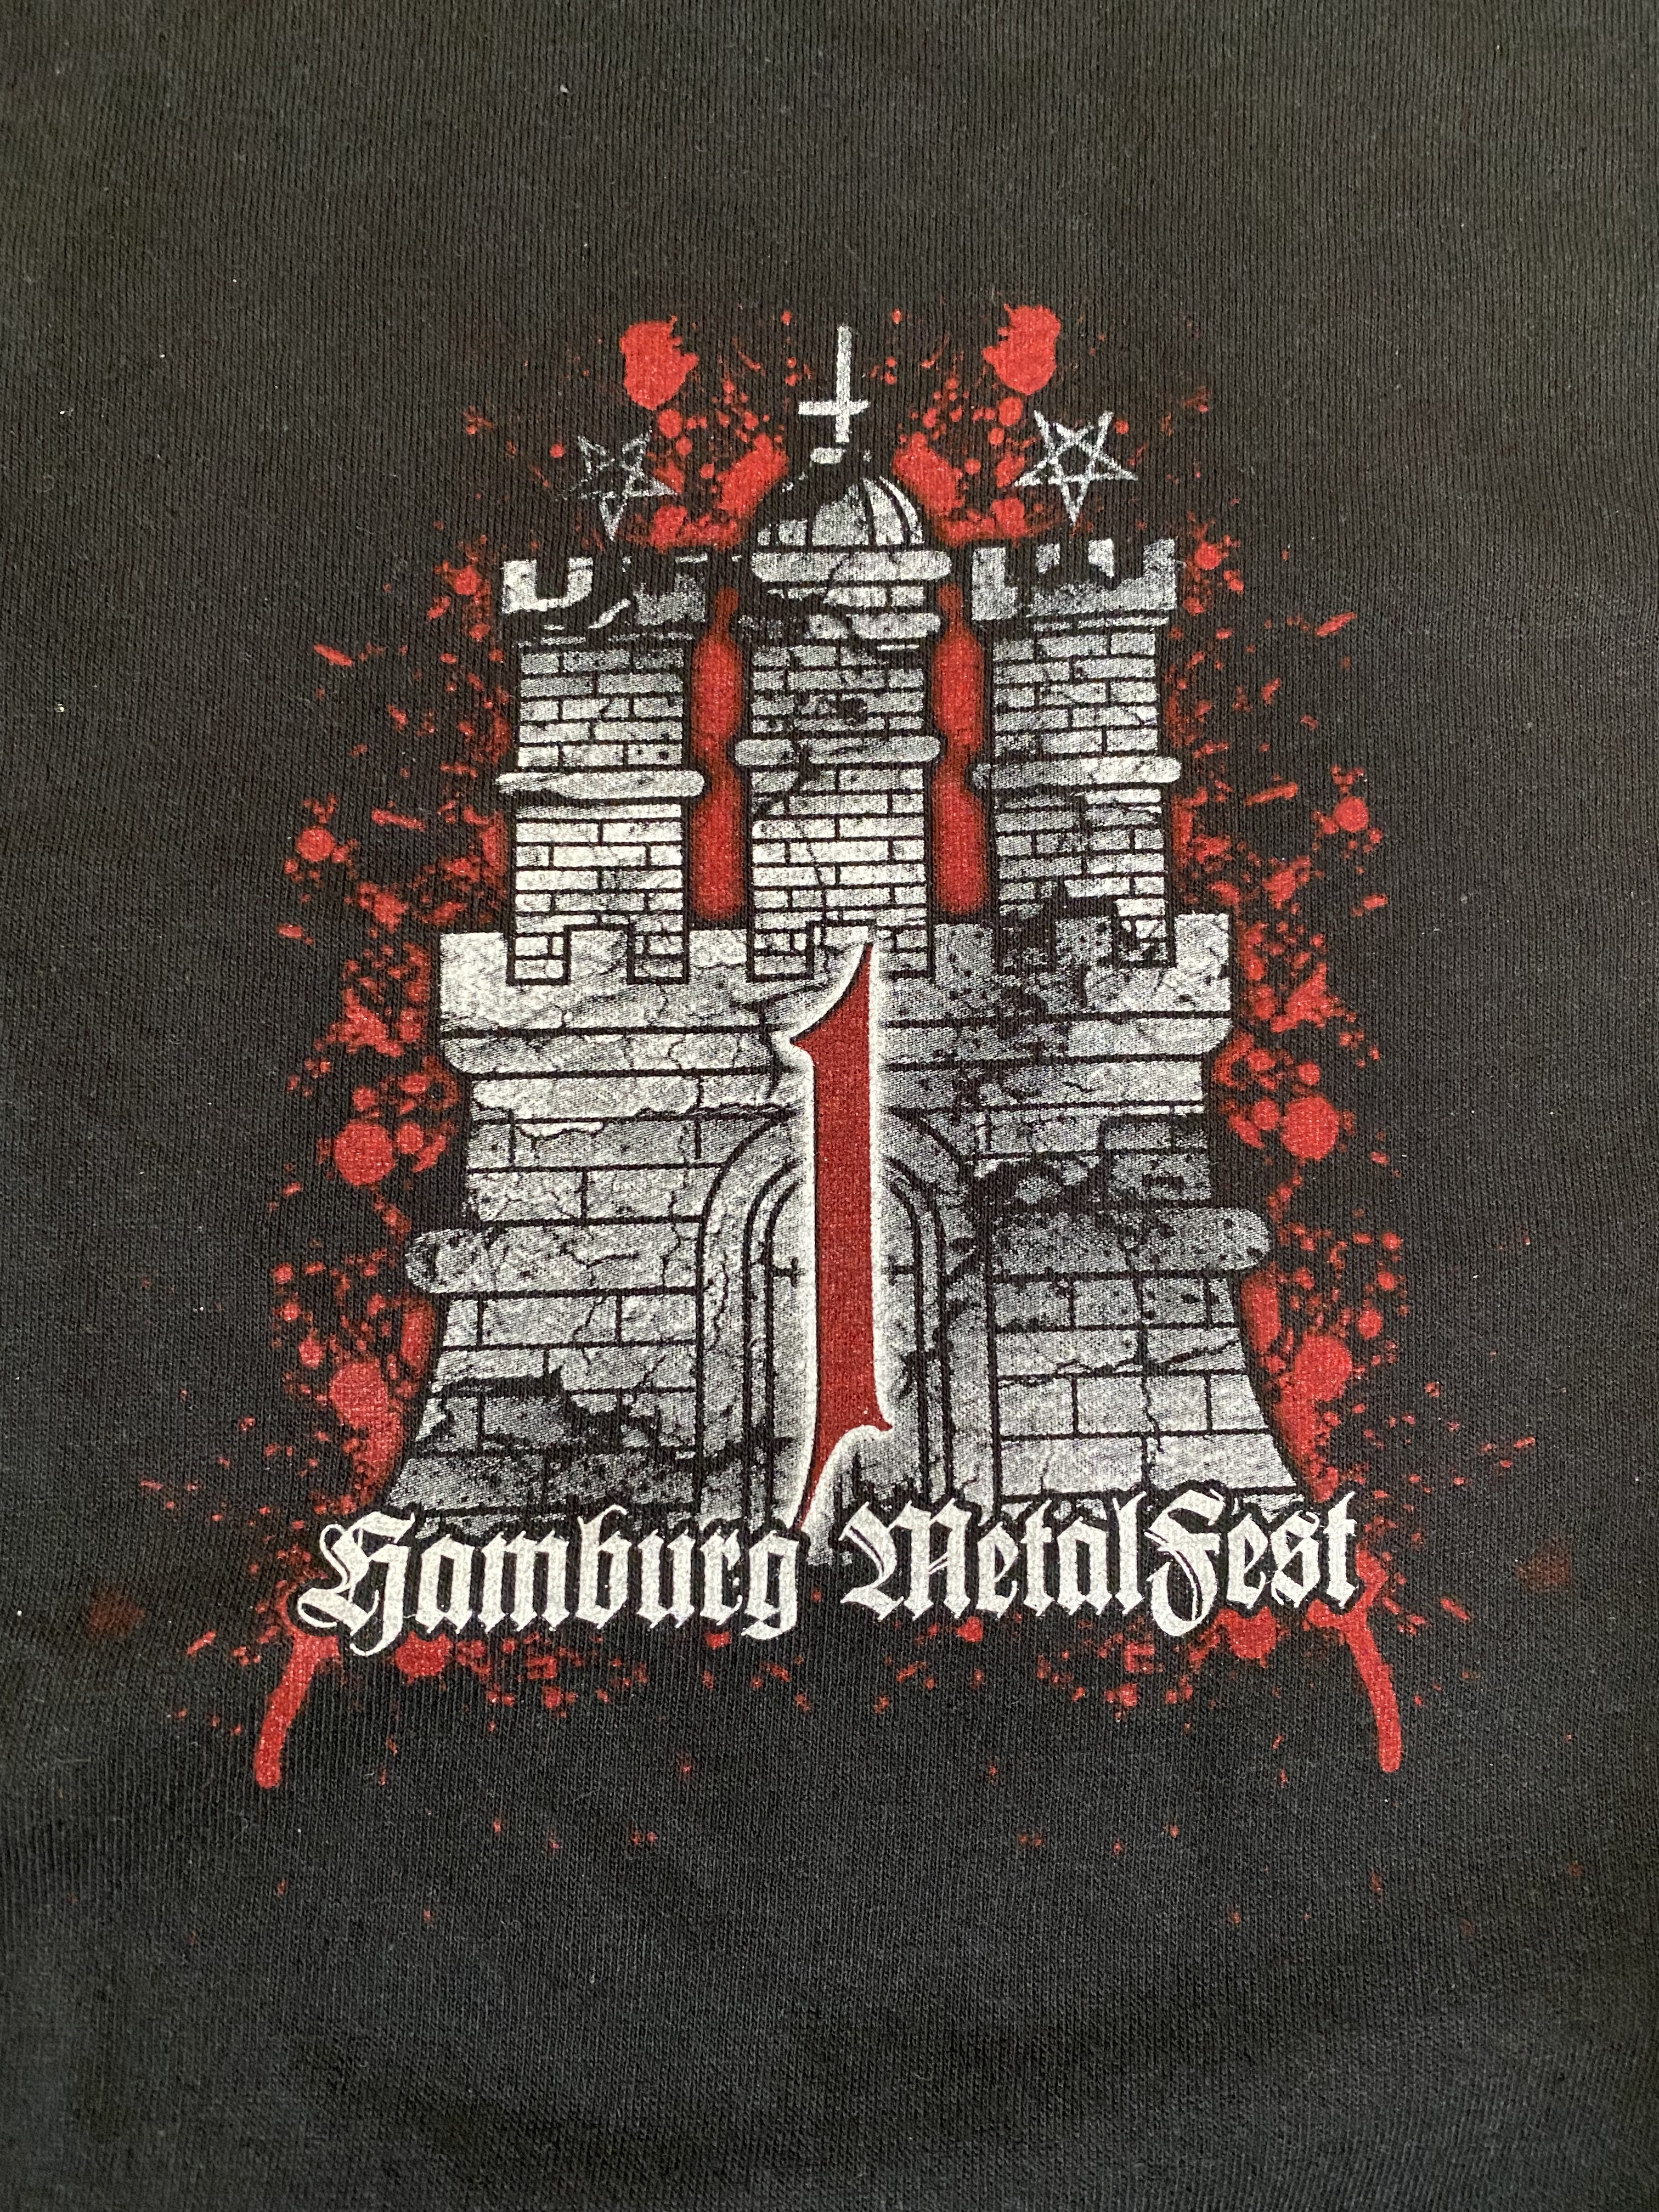 Metalfest Hamburg Shirt